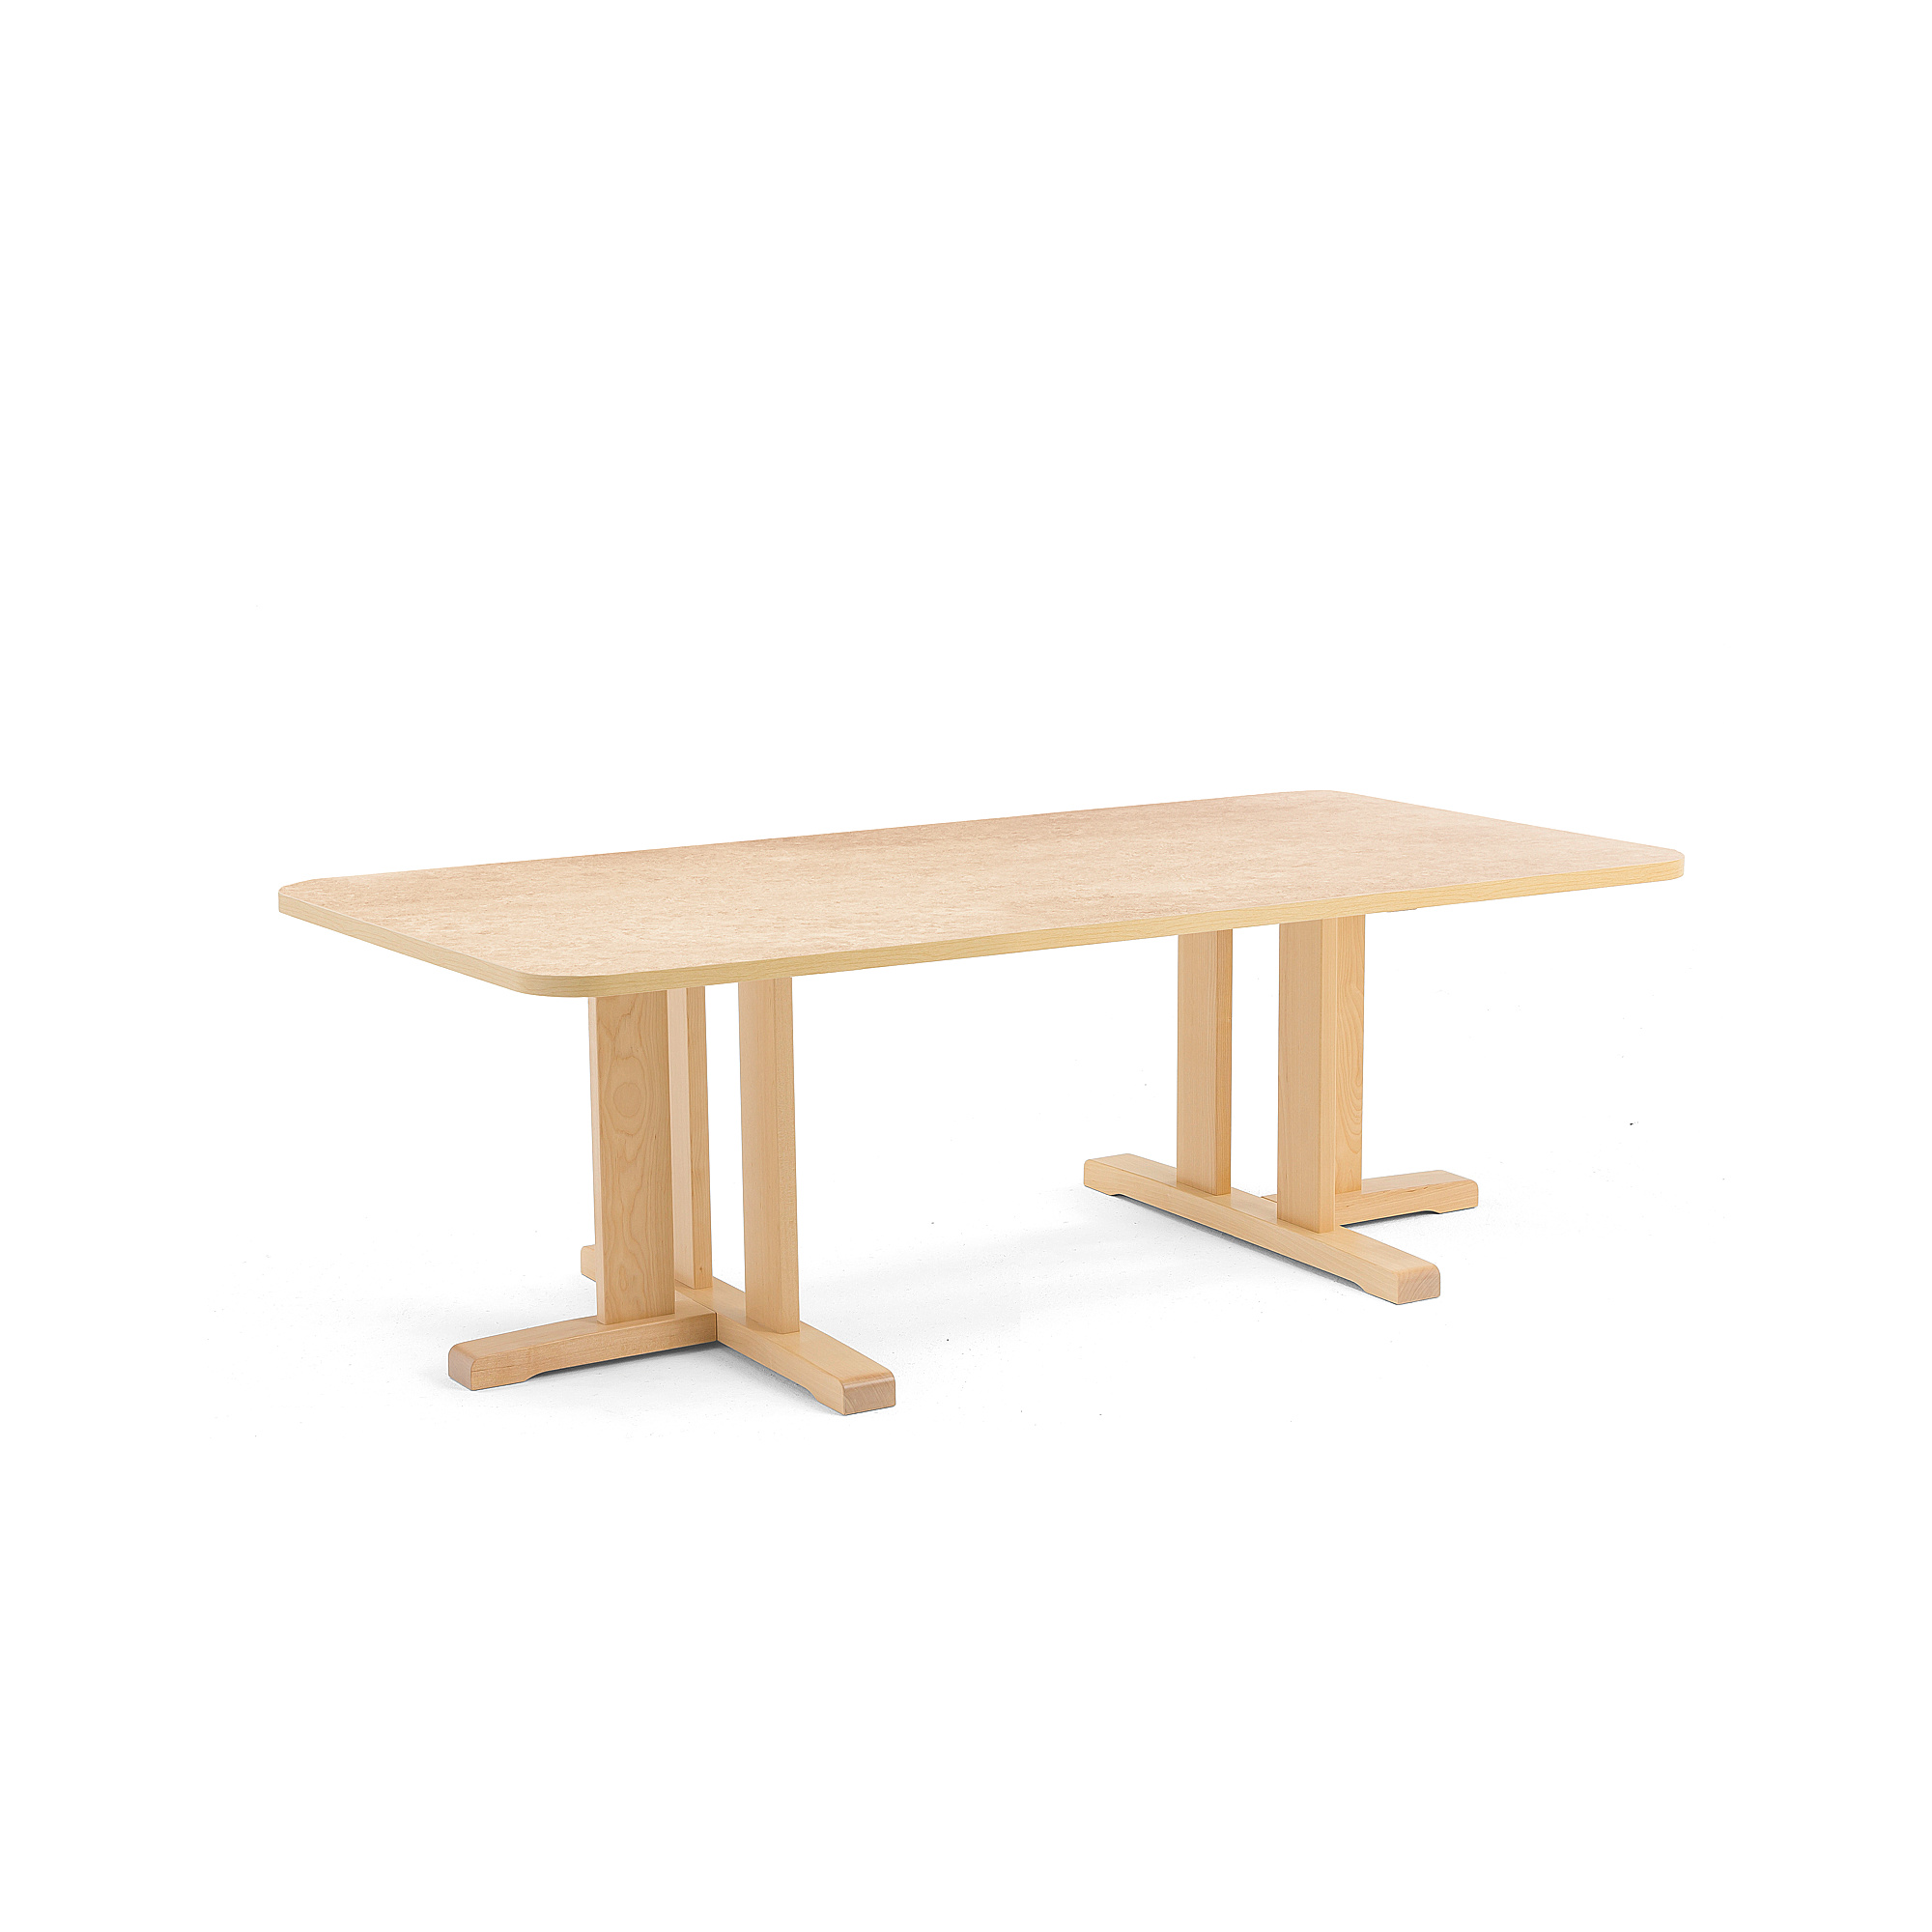 Stůl KUPOL, 1600x800x500 mm, obdélník, akustické linoleum, bříza/béžová